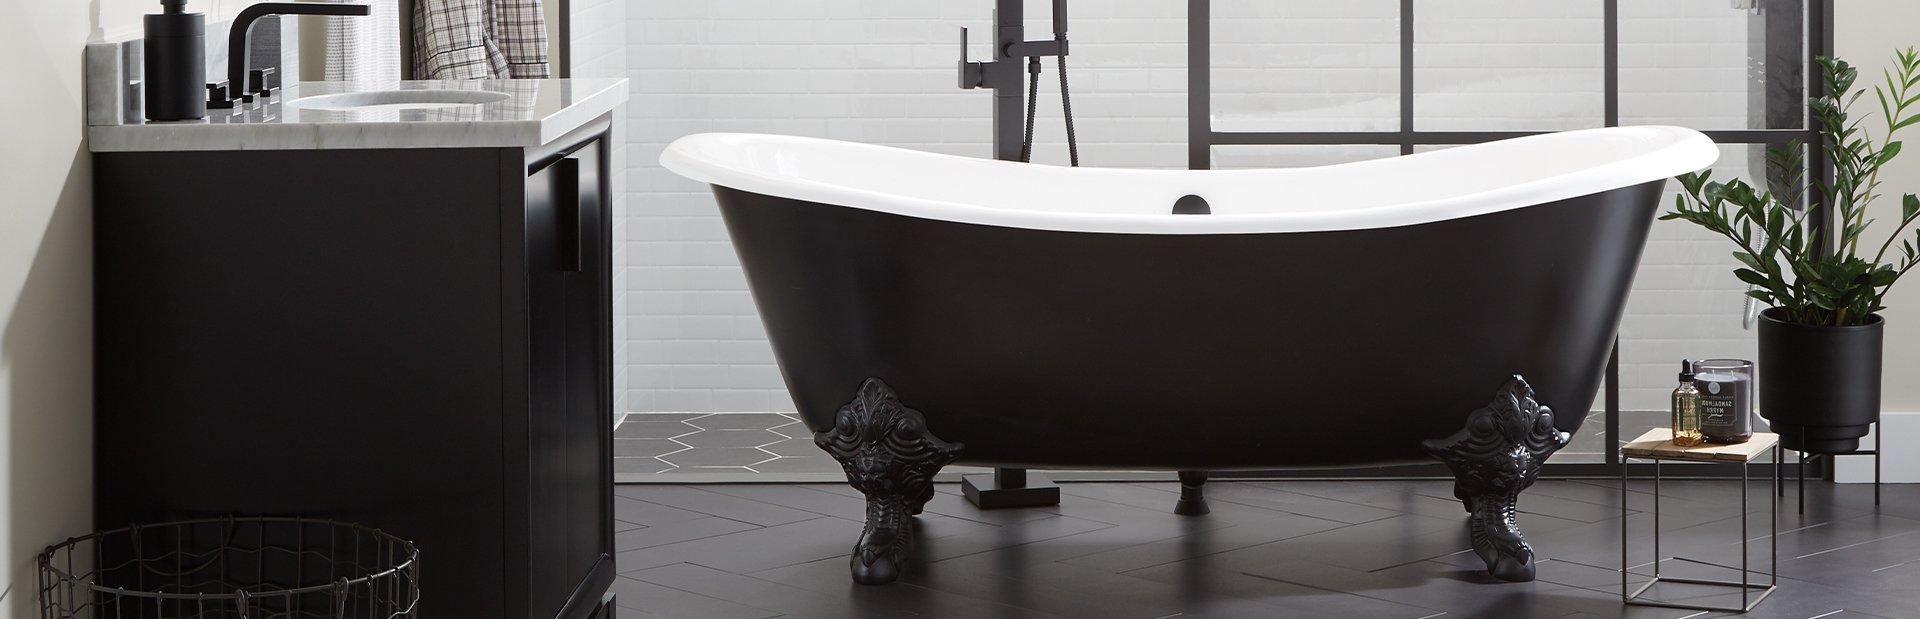 modern bathroom with black bathtub